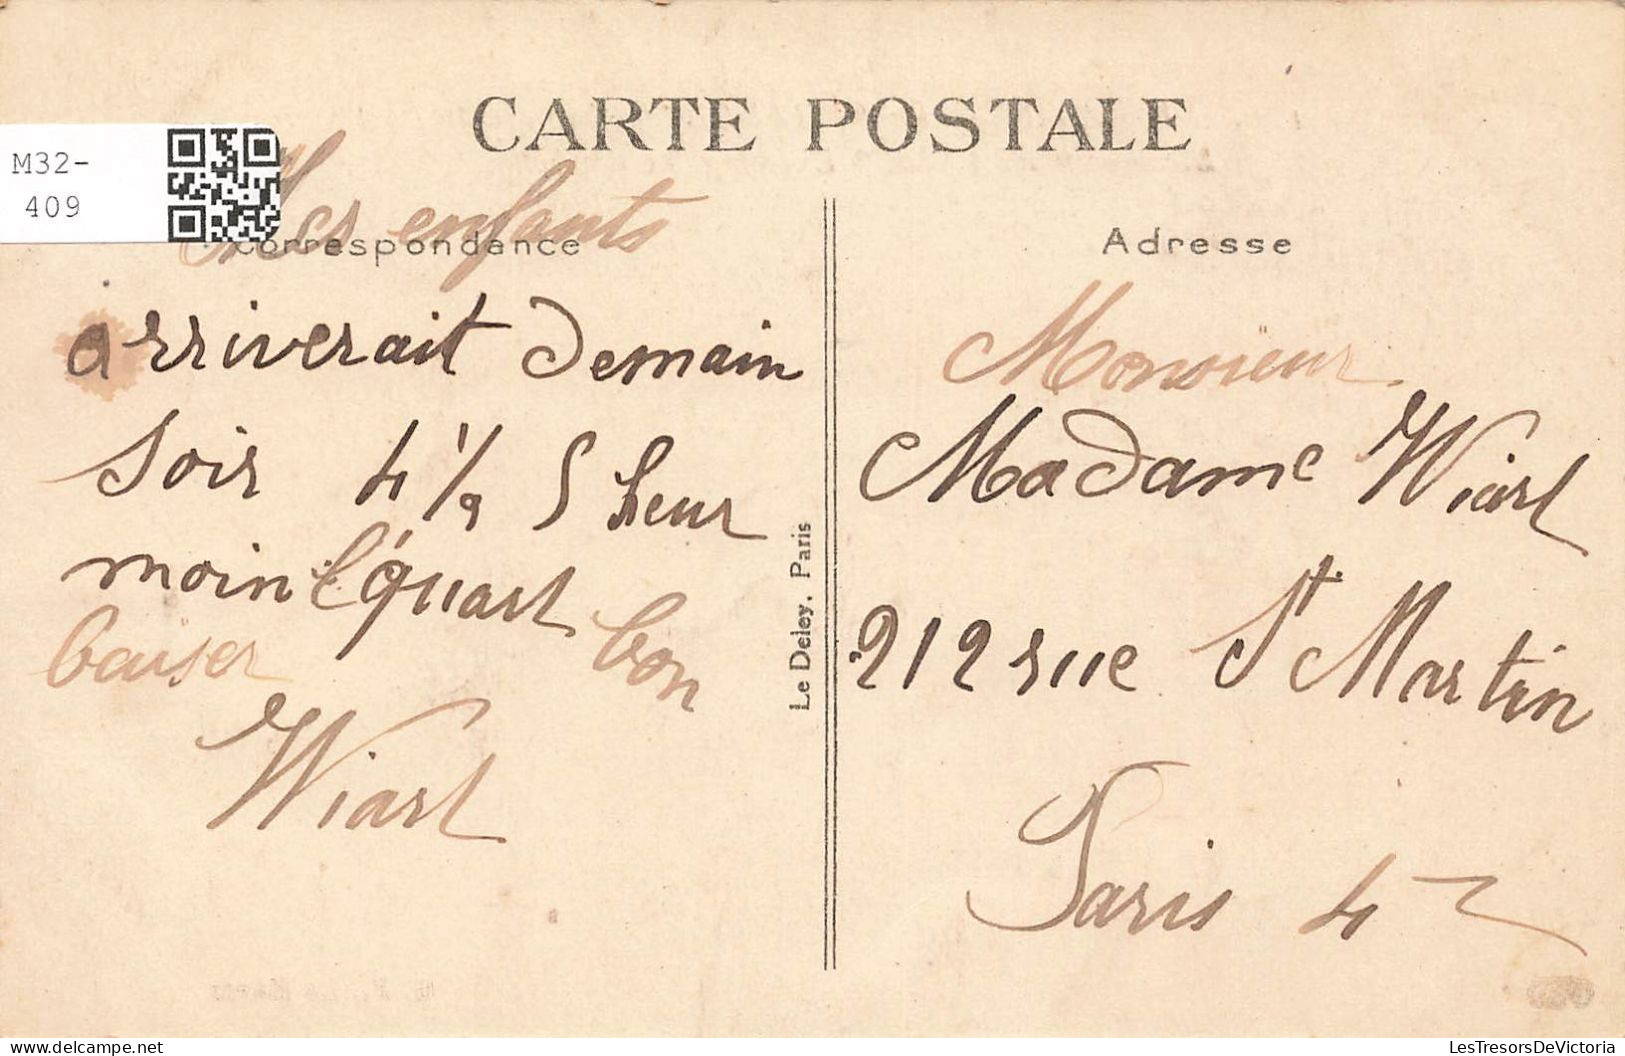 FRANCE - Le Havre - Le France Et L'entrée Du Port - Carte Postale Ancienne - Unclassified